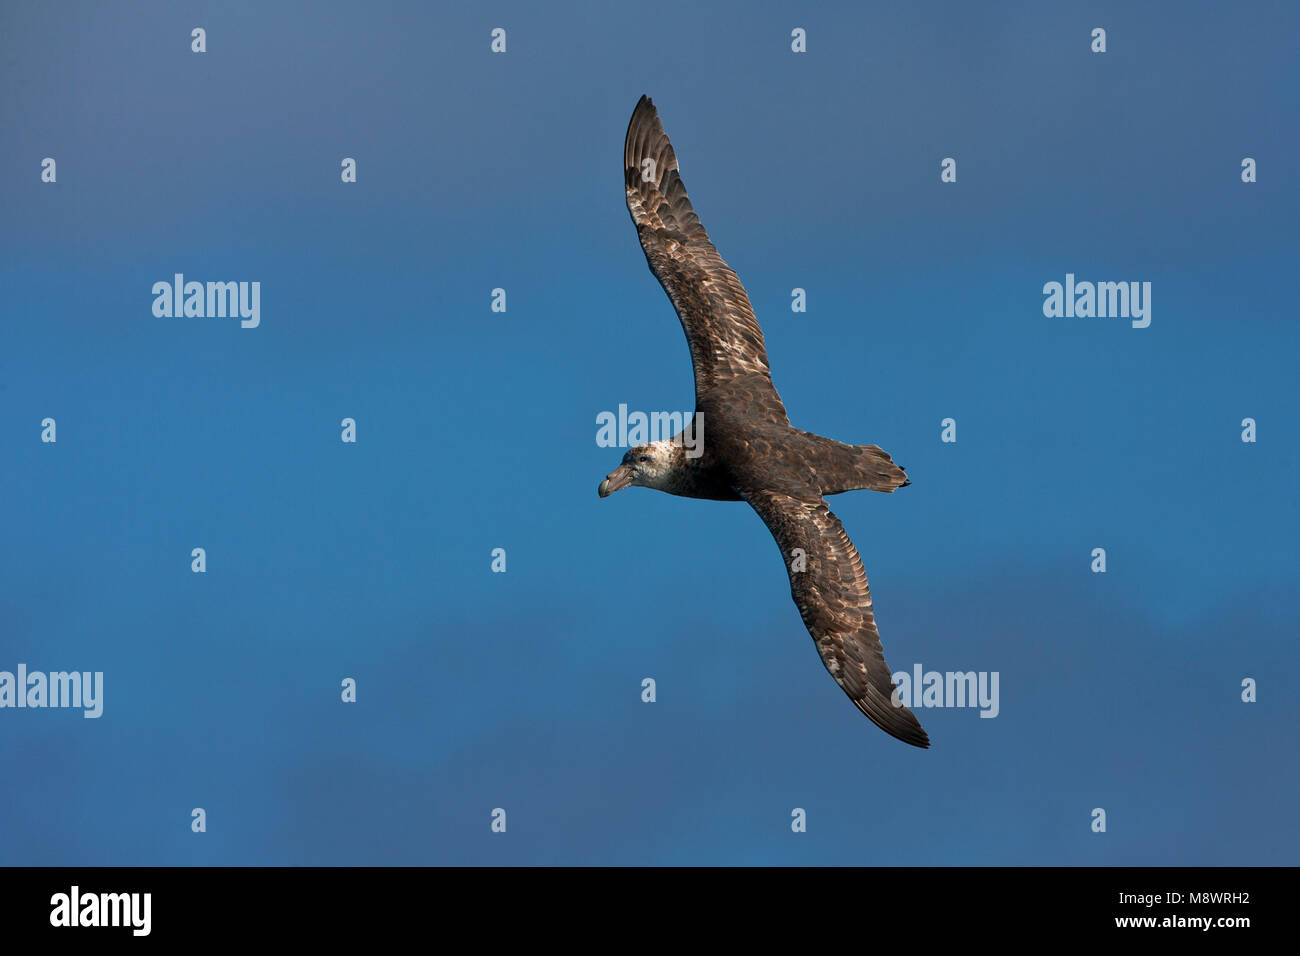 Zuidelijke Reuzenstormvogel vliegend; Südliche Giant Petrel fliegen Stockfoto